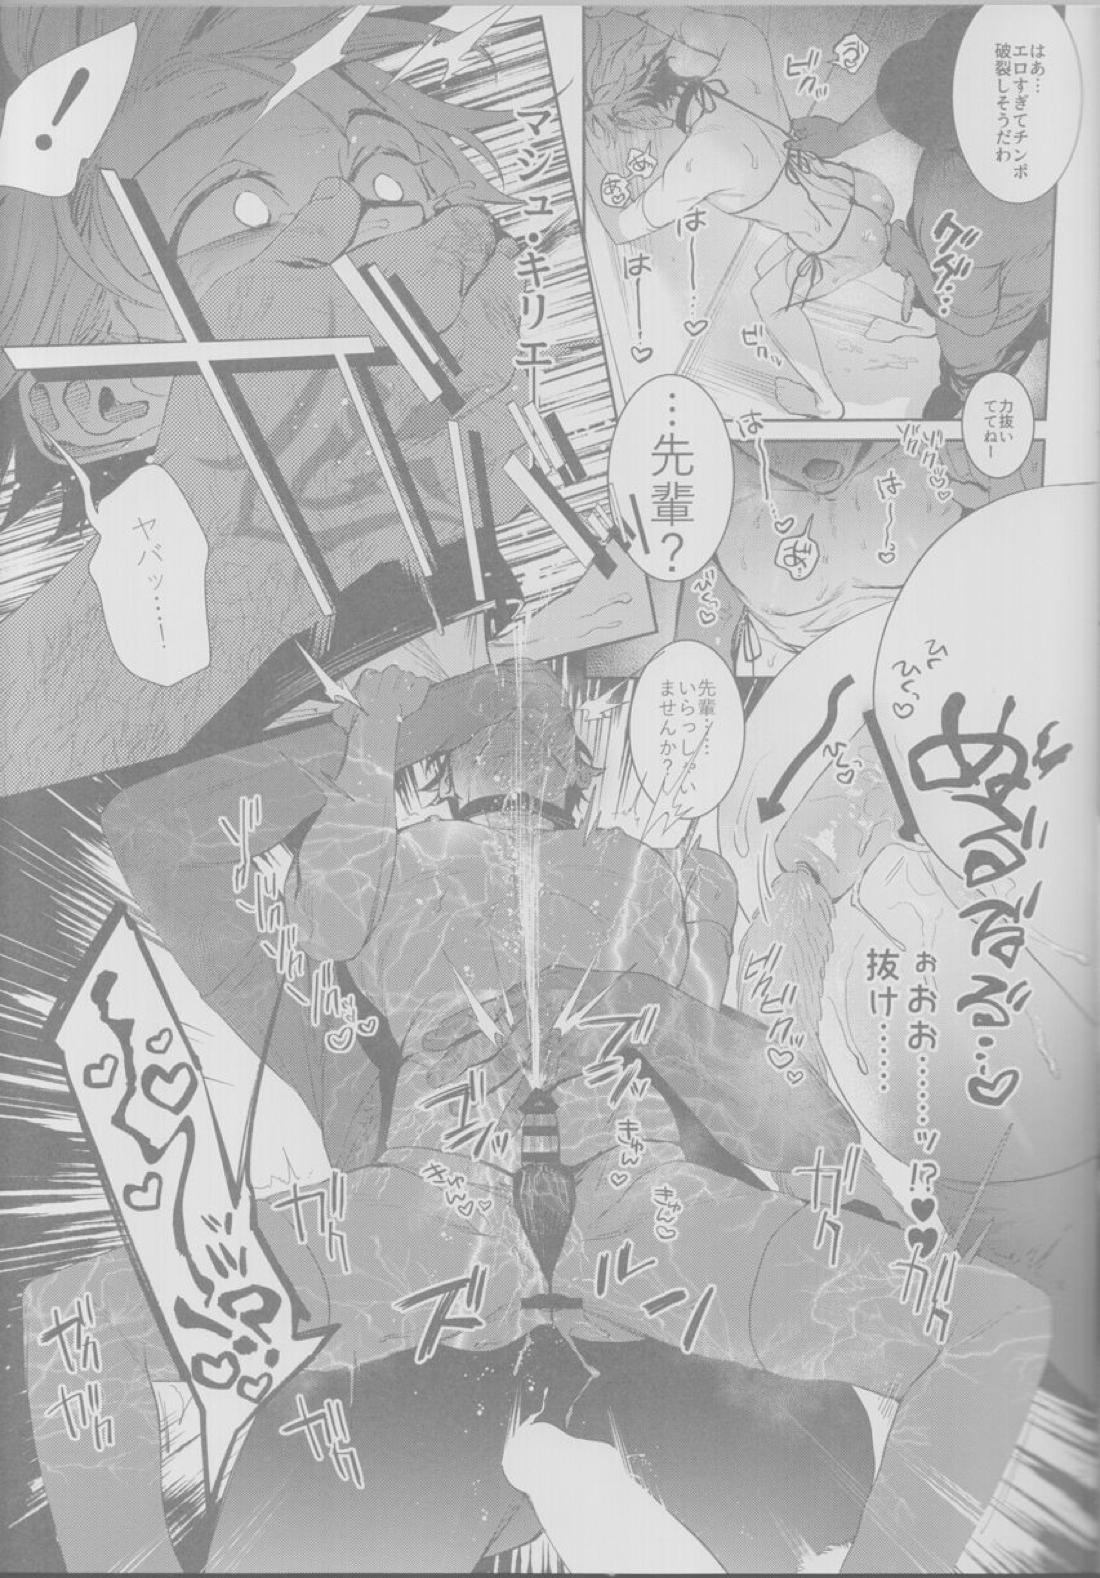 【BL漫画 Fate/Grand Order】悪いことばかりする悪の天才モリアーティがマスターの絶対服従コマンドコードで身体を操られて調教されちゃうドキドキゲイエッチ22